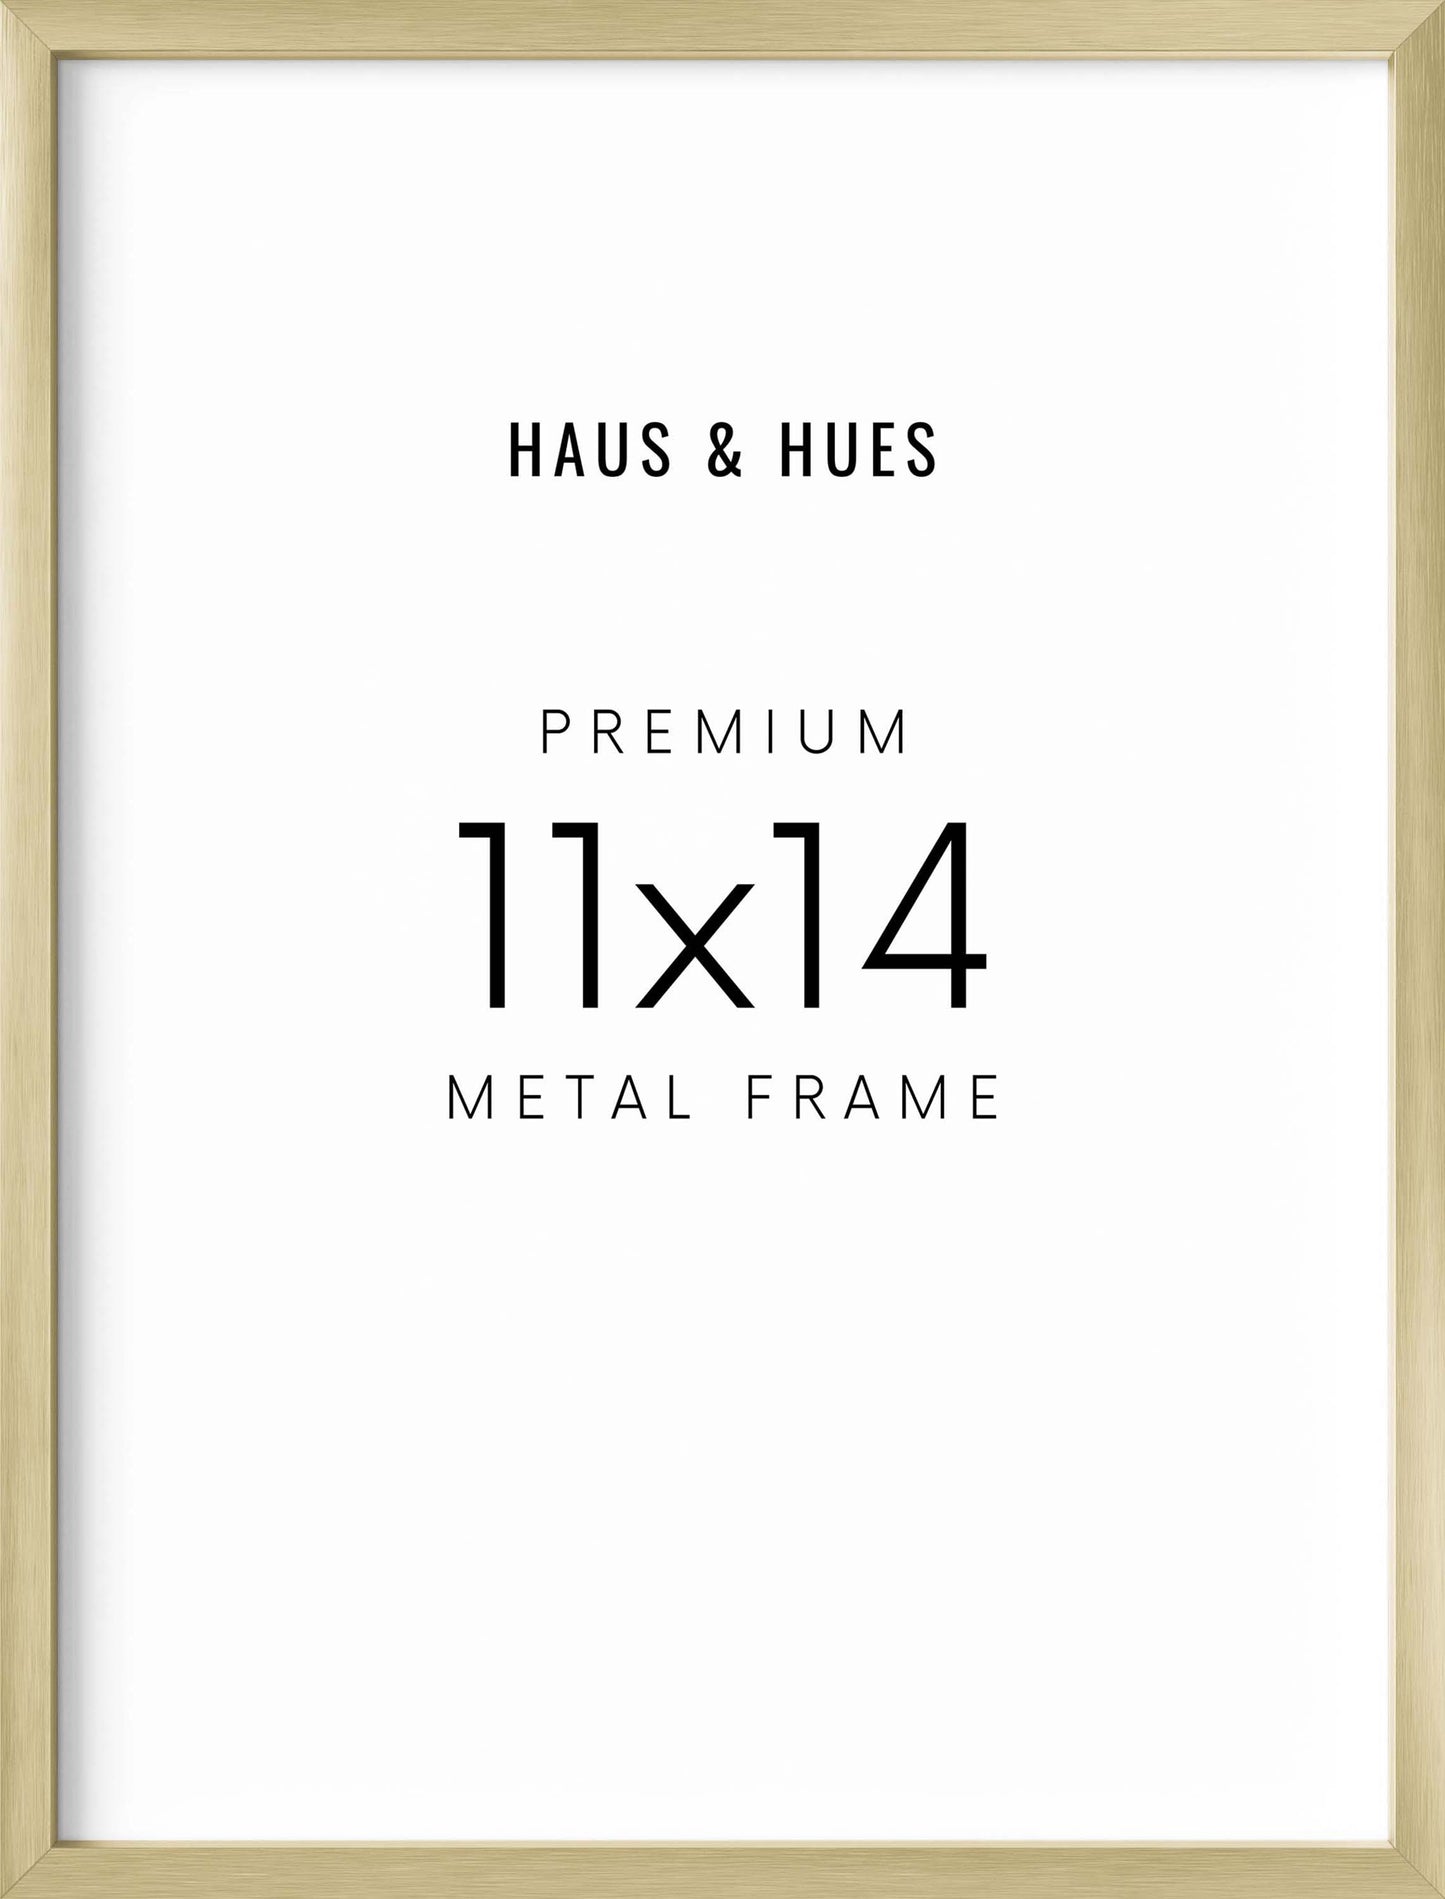 11x14 in, Set of 4, Gold Aluminum